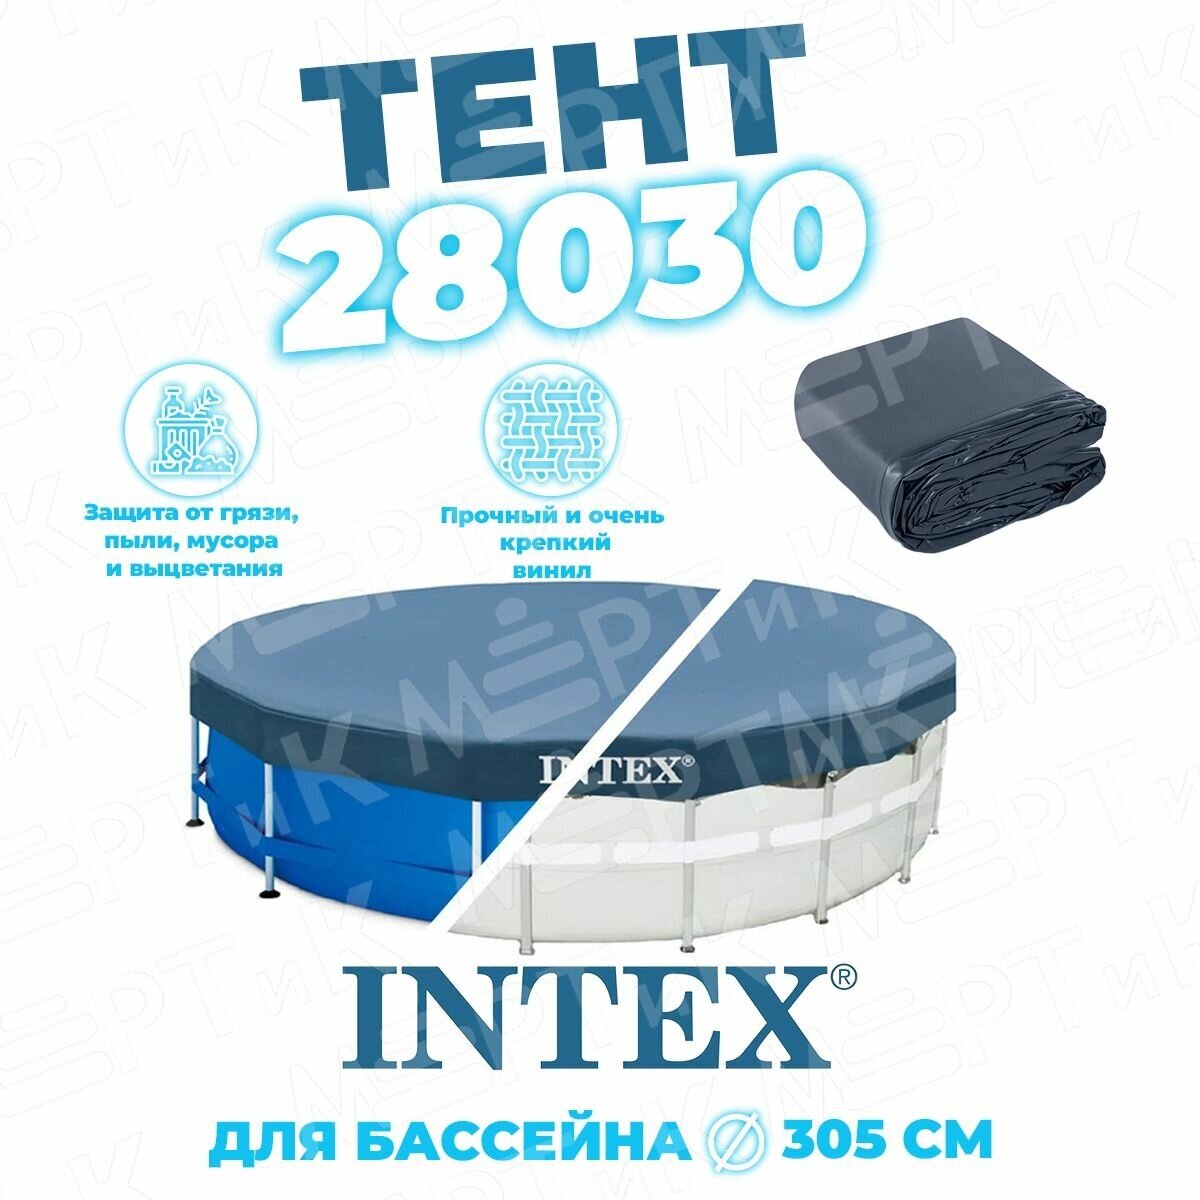 Тент Intex 305cm 28030